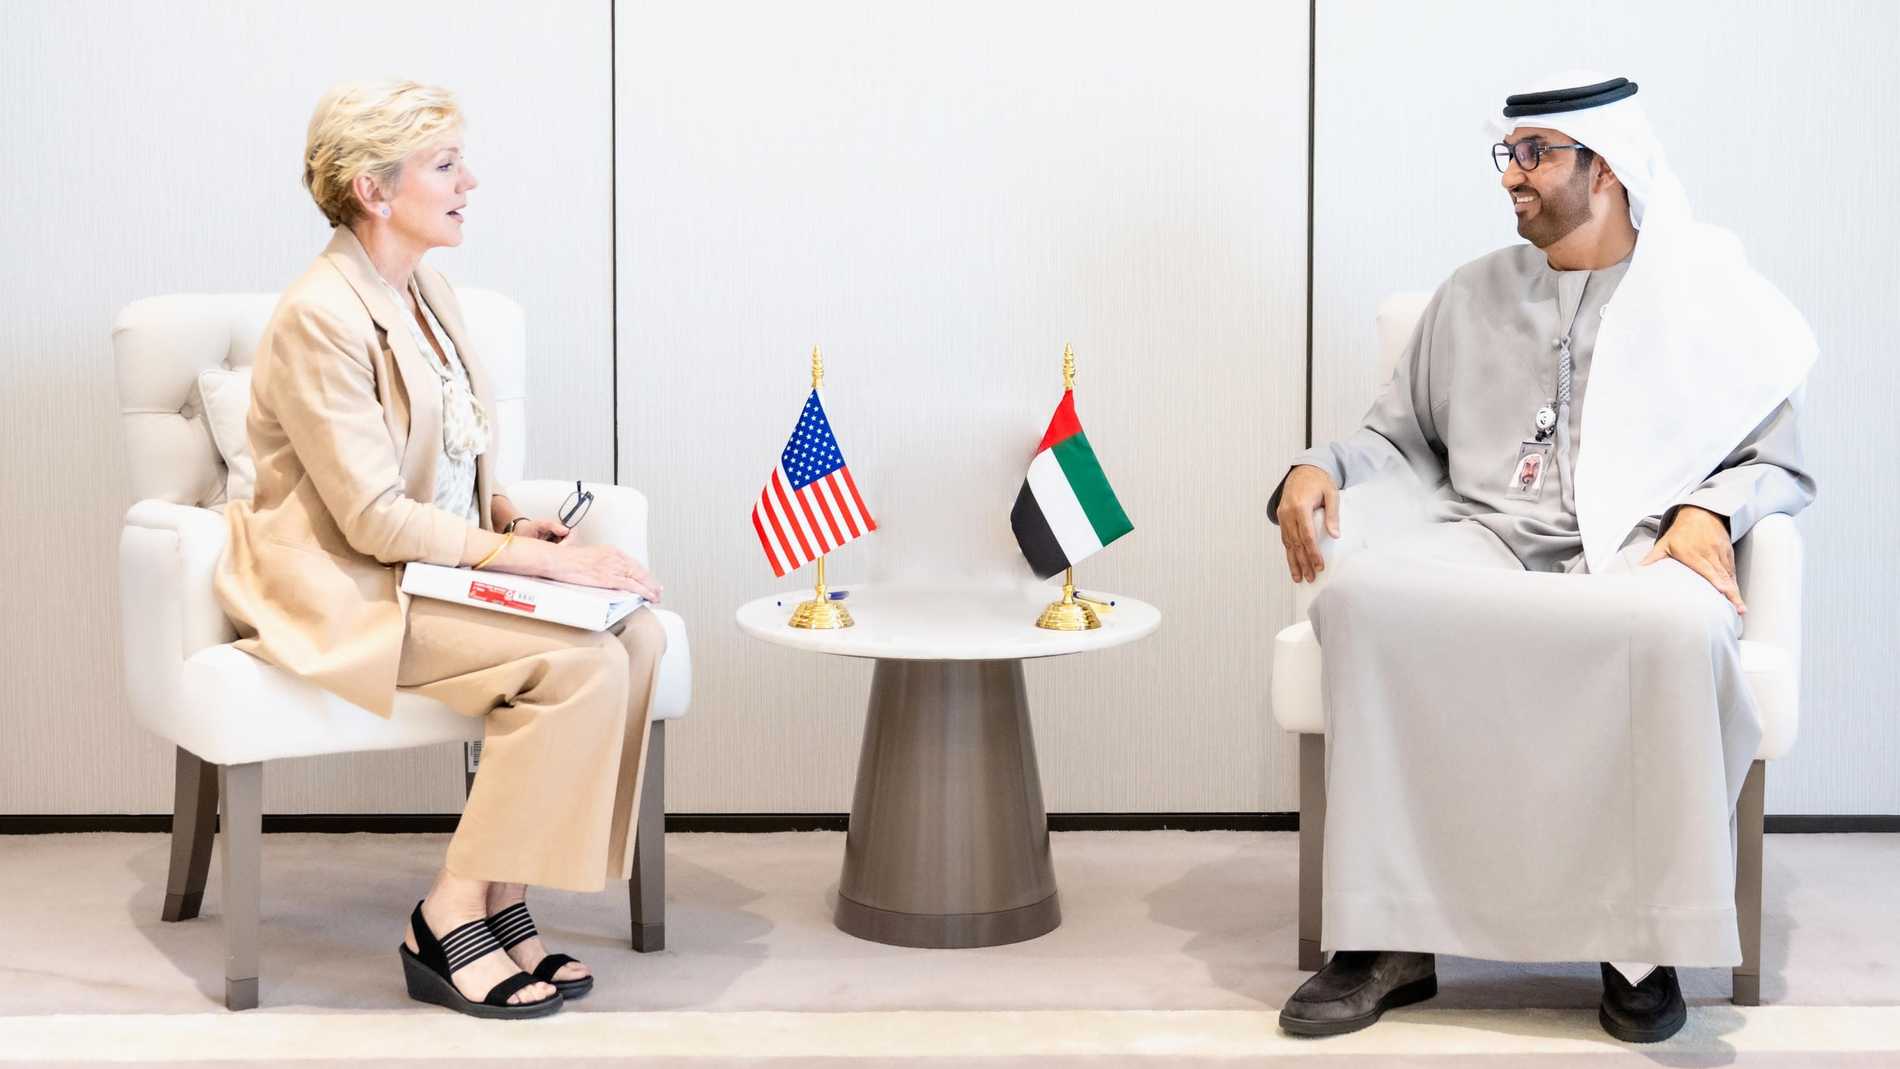 سلطان الجابر يلتقي وزيرة الطاقة الأميركية في أبوظبي